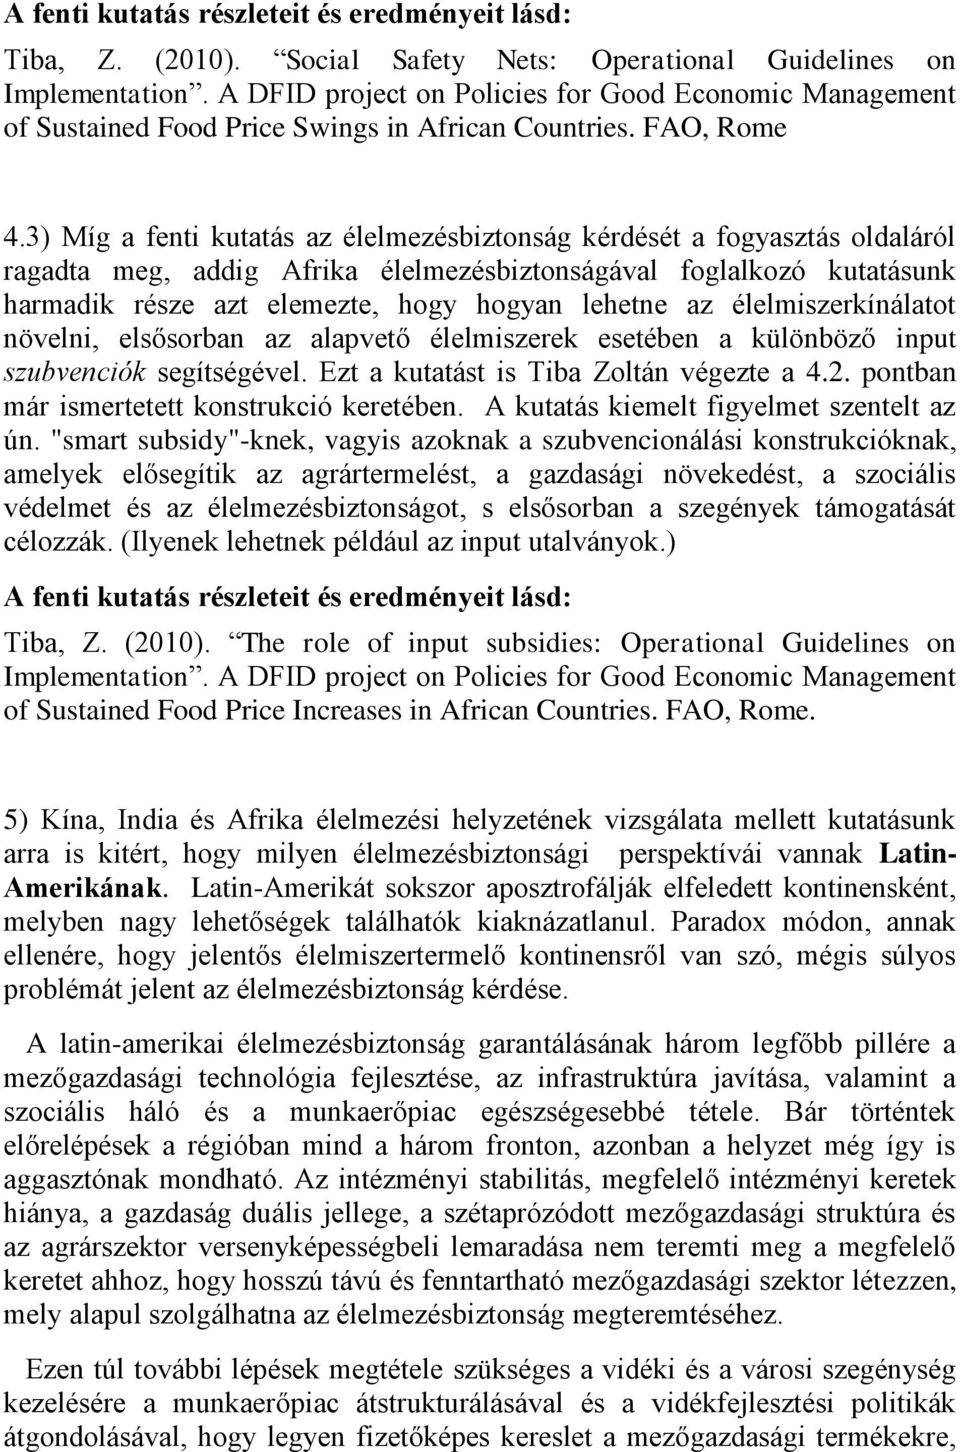 3) Míg a fenti kutatás az élelmezésbiztonság kérdését a fogyasztás oldaláról ragadta meg, addig Afrika élelmezésbiztonságával foglalkozó kutatásunk harmadik része azt elemezte, hogy hogyan lehetne az